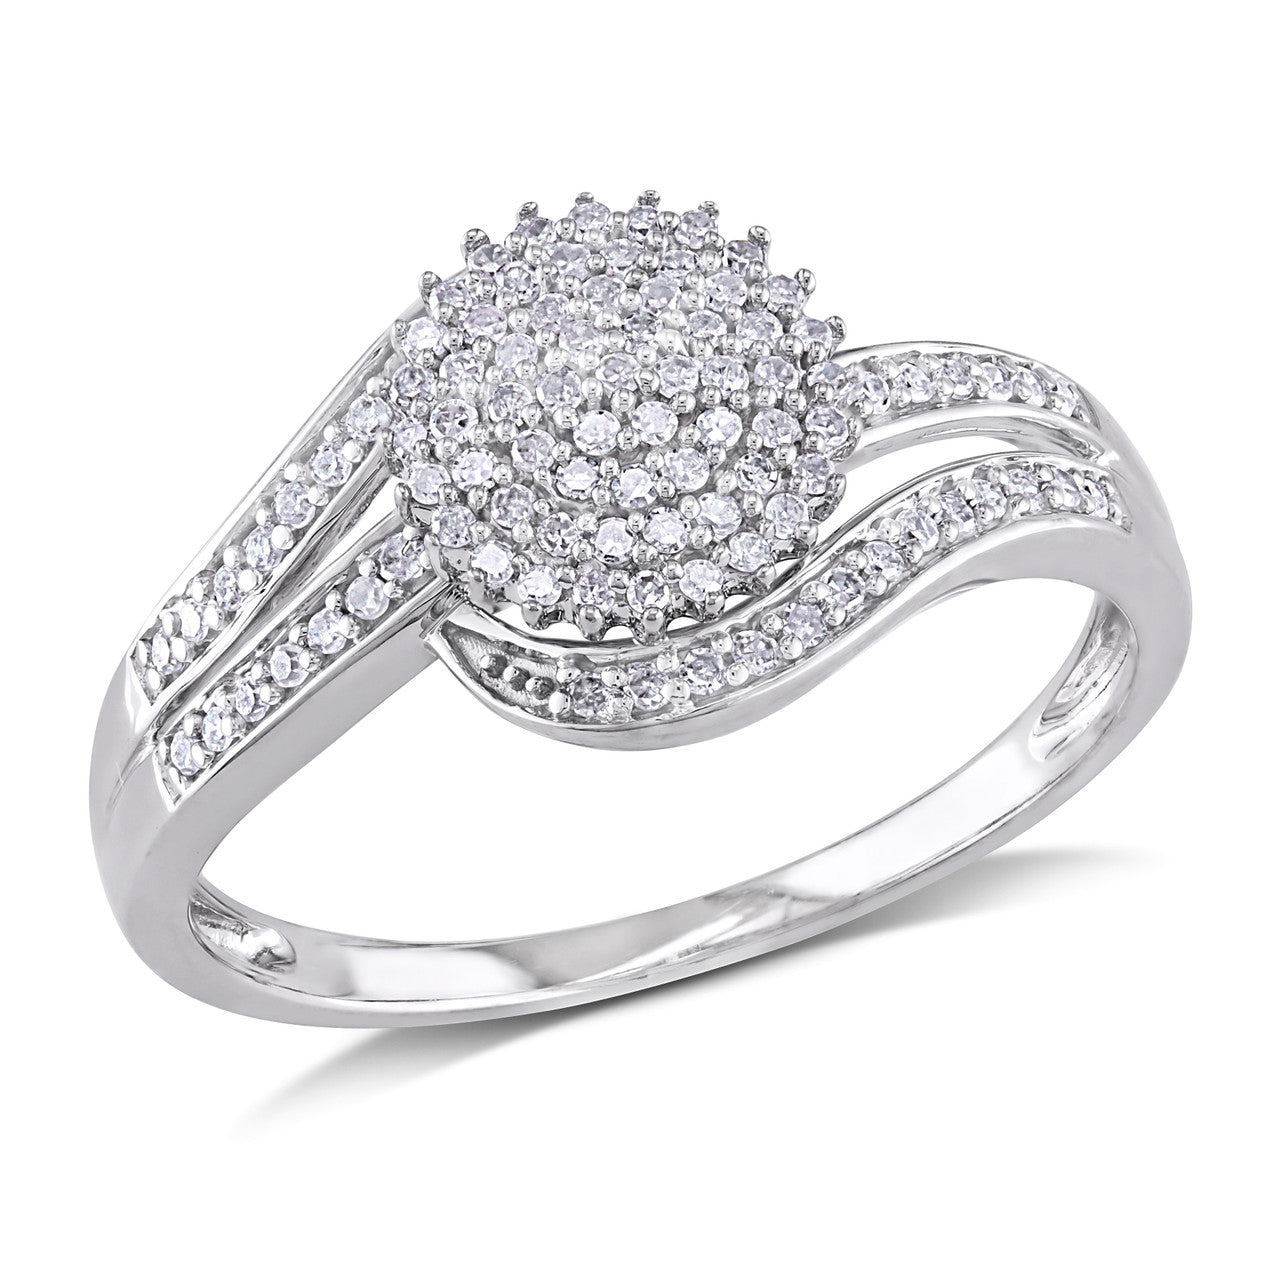 Ice Jewellery 1/3 CT Diamond TW Ring 10k White Gold - 75000002034 | Ice Jewellery Australia